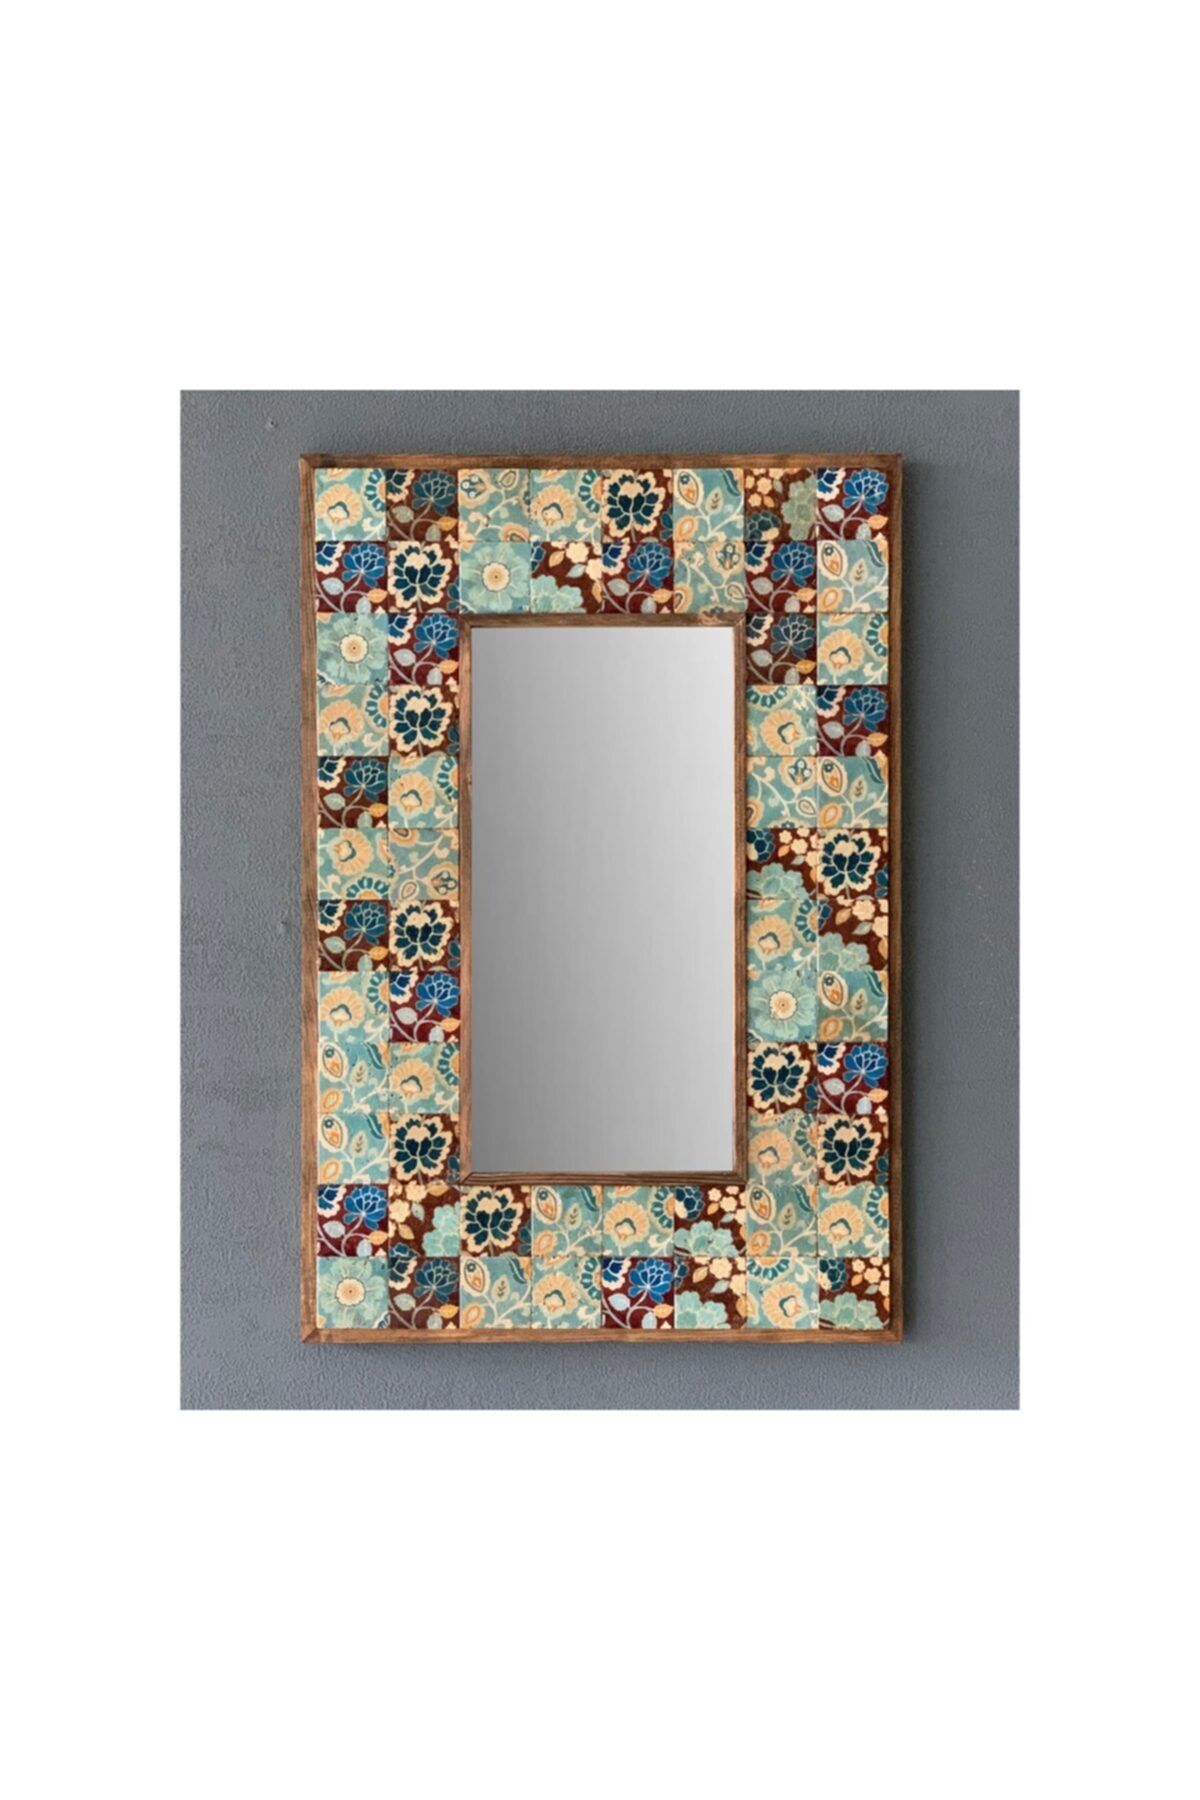 Oscar Stone Decor Taş Mozaik Ayna 43 X 63 Cm Mavi Yaprak Desenli Dresuar Üstü